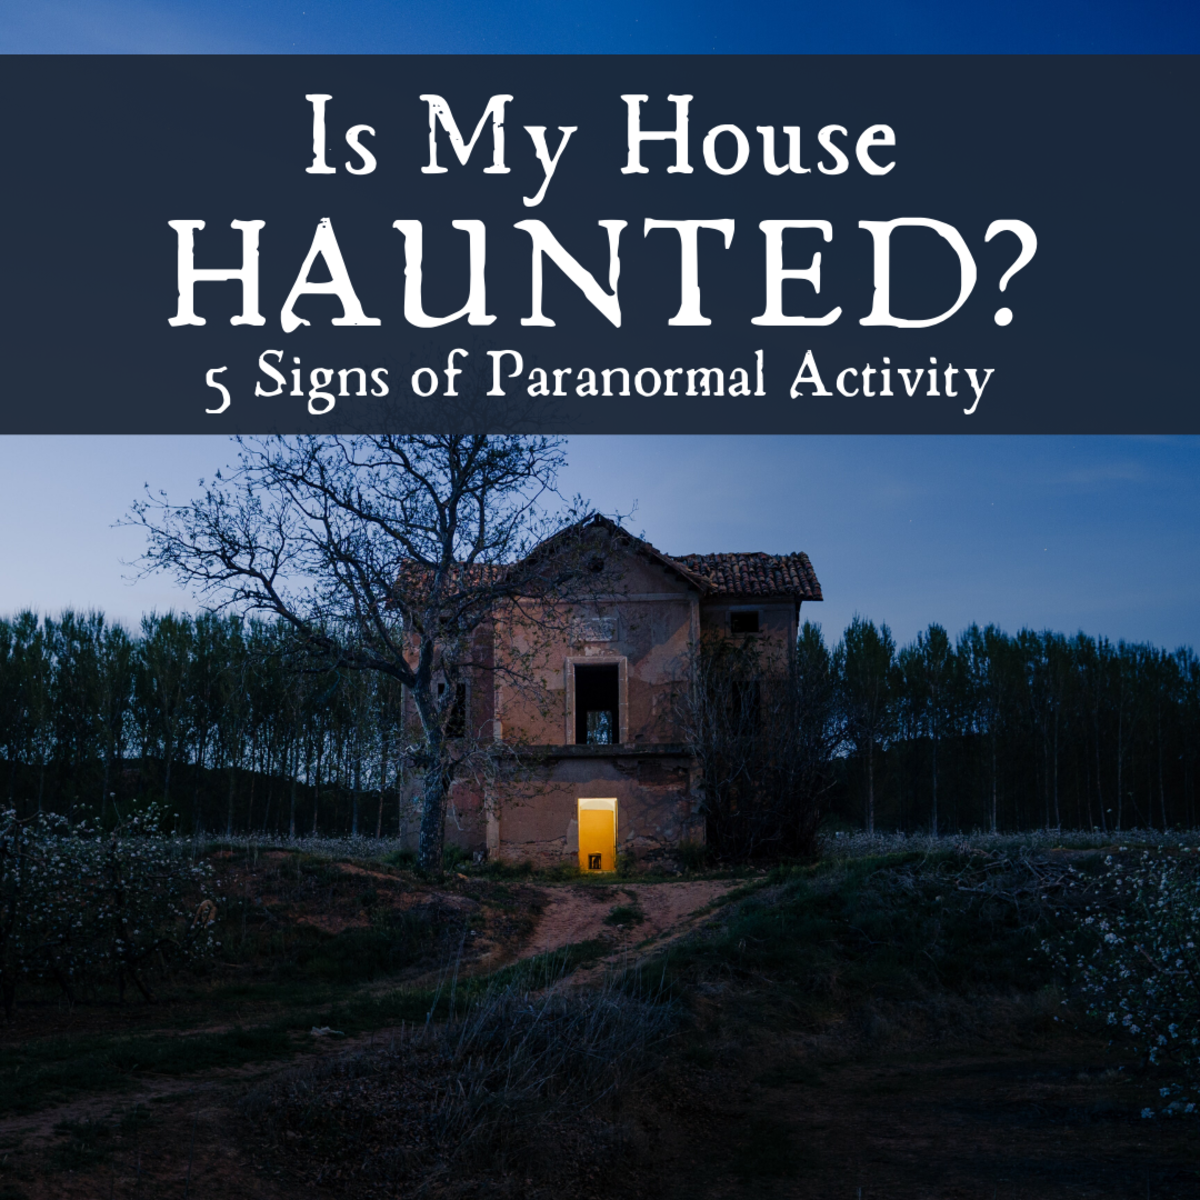 探索的一些迹象可能表明一个幽灵般的出现在你的房子。